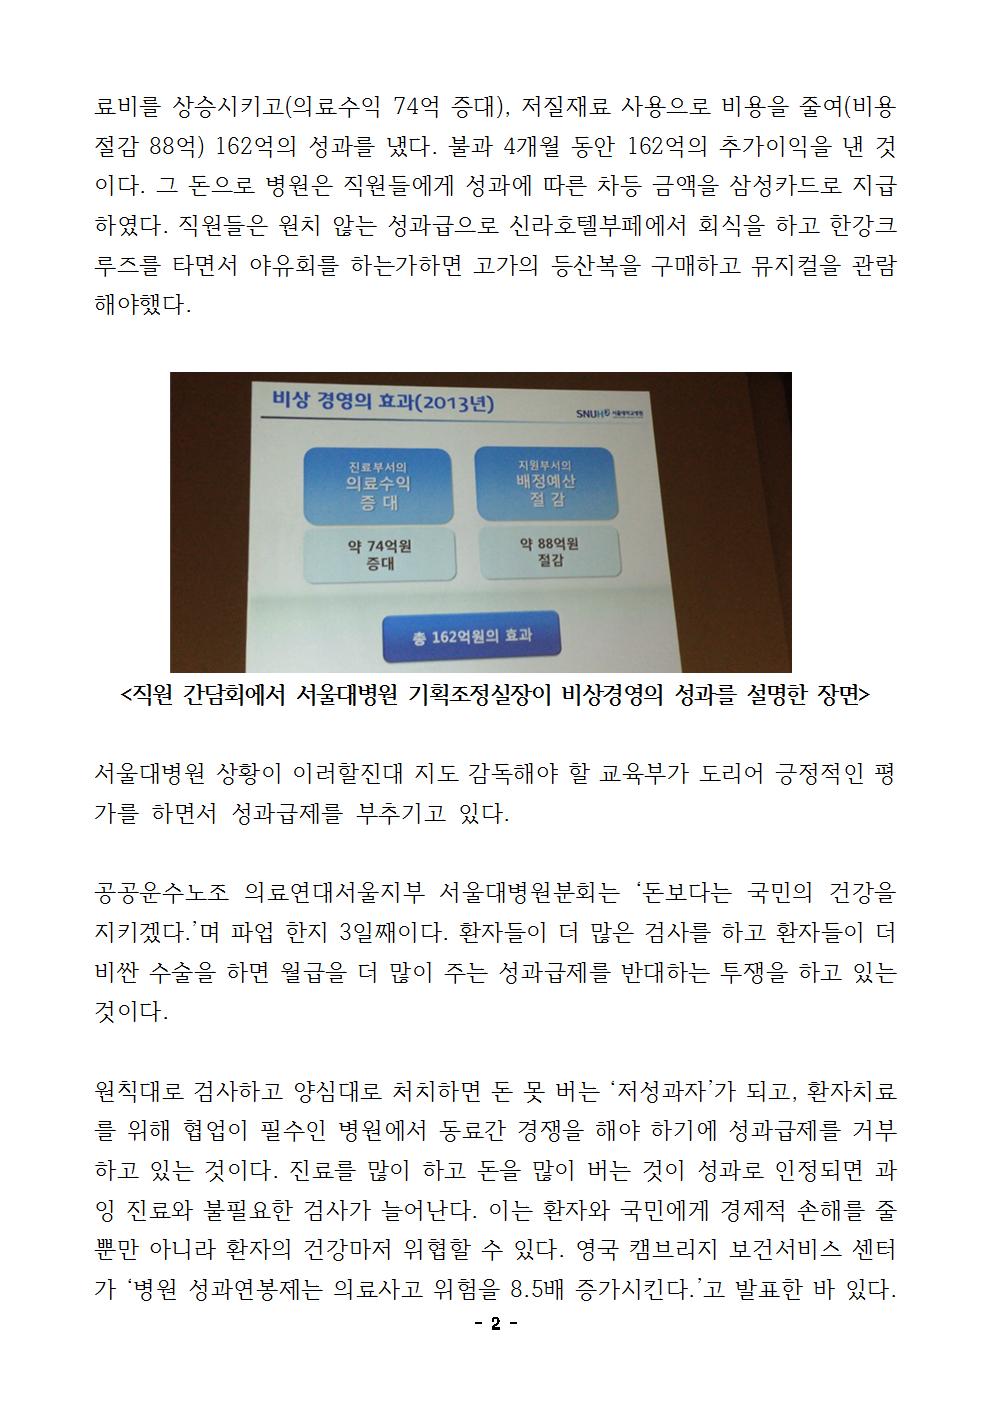 [보도자료]0929 서울대병원 성과급제 도입 반대002.jpg